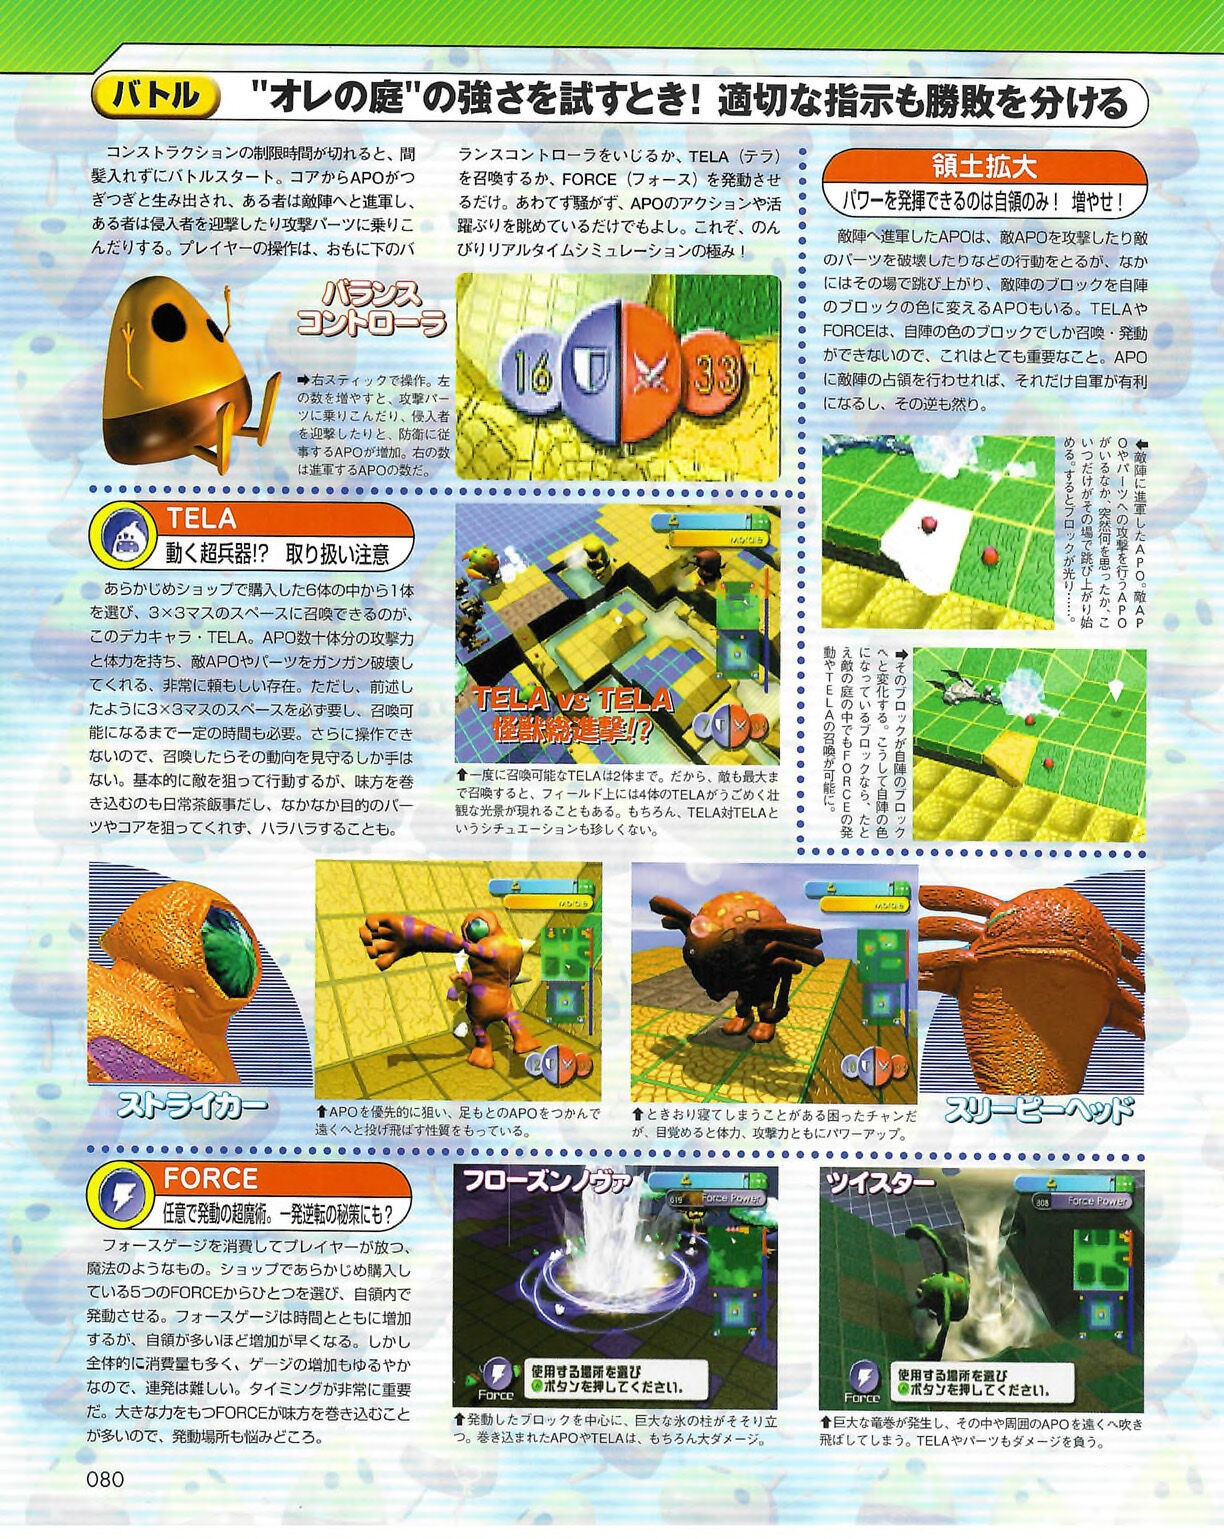 Famitsu_Xbox_2003-04_jp2 79